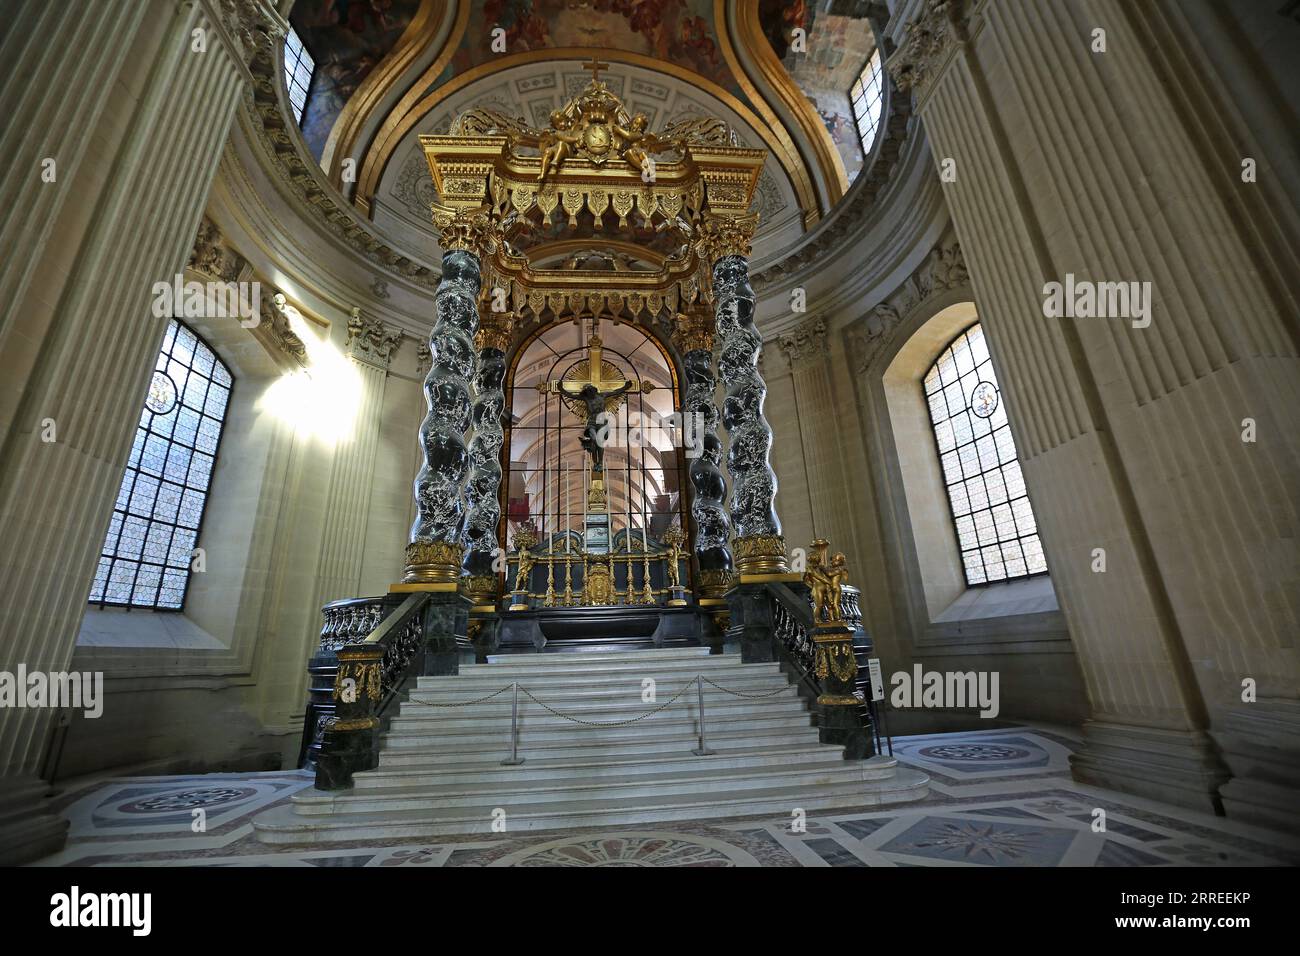 Marble altar - Dome des Invalides, Paris, France Stock Photo